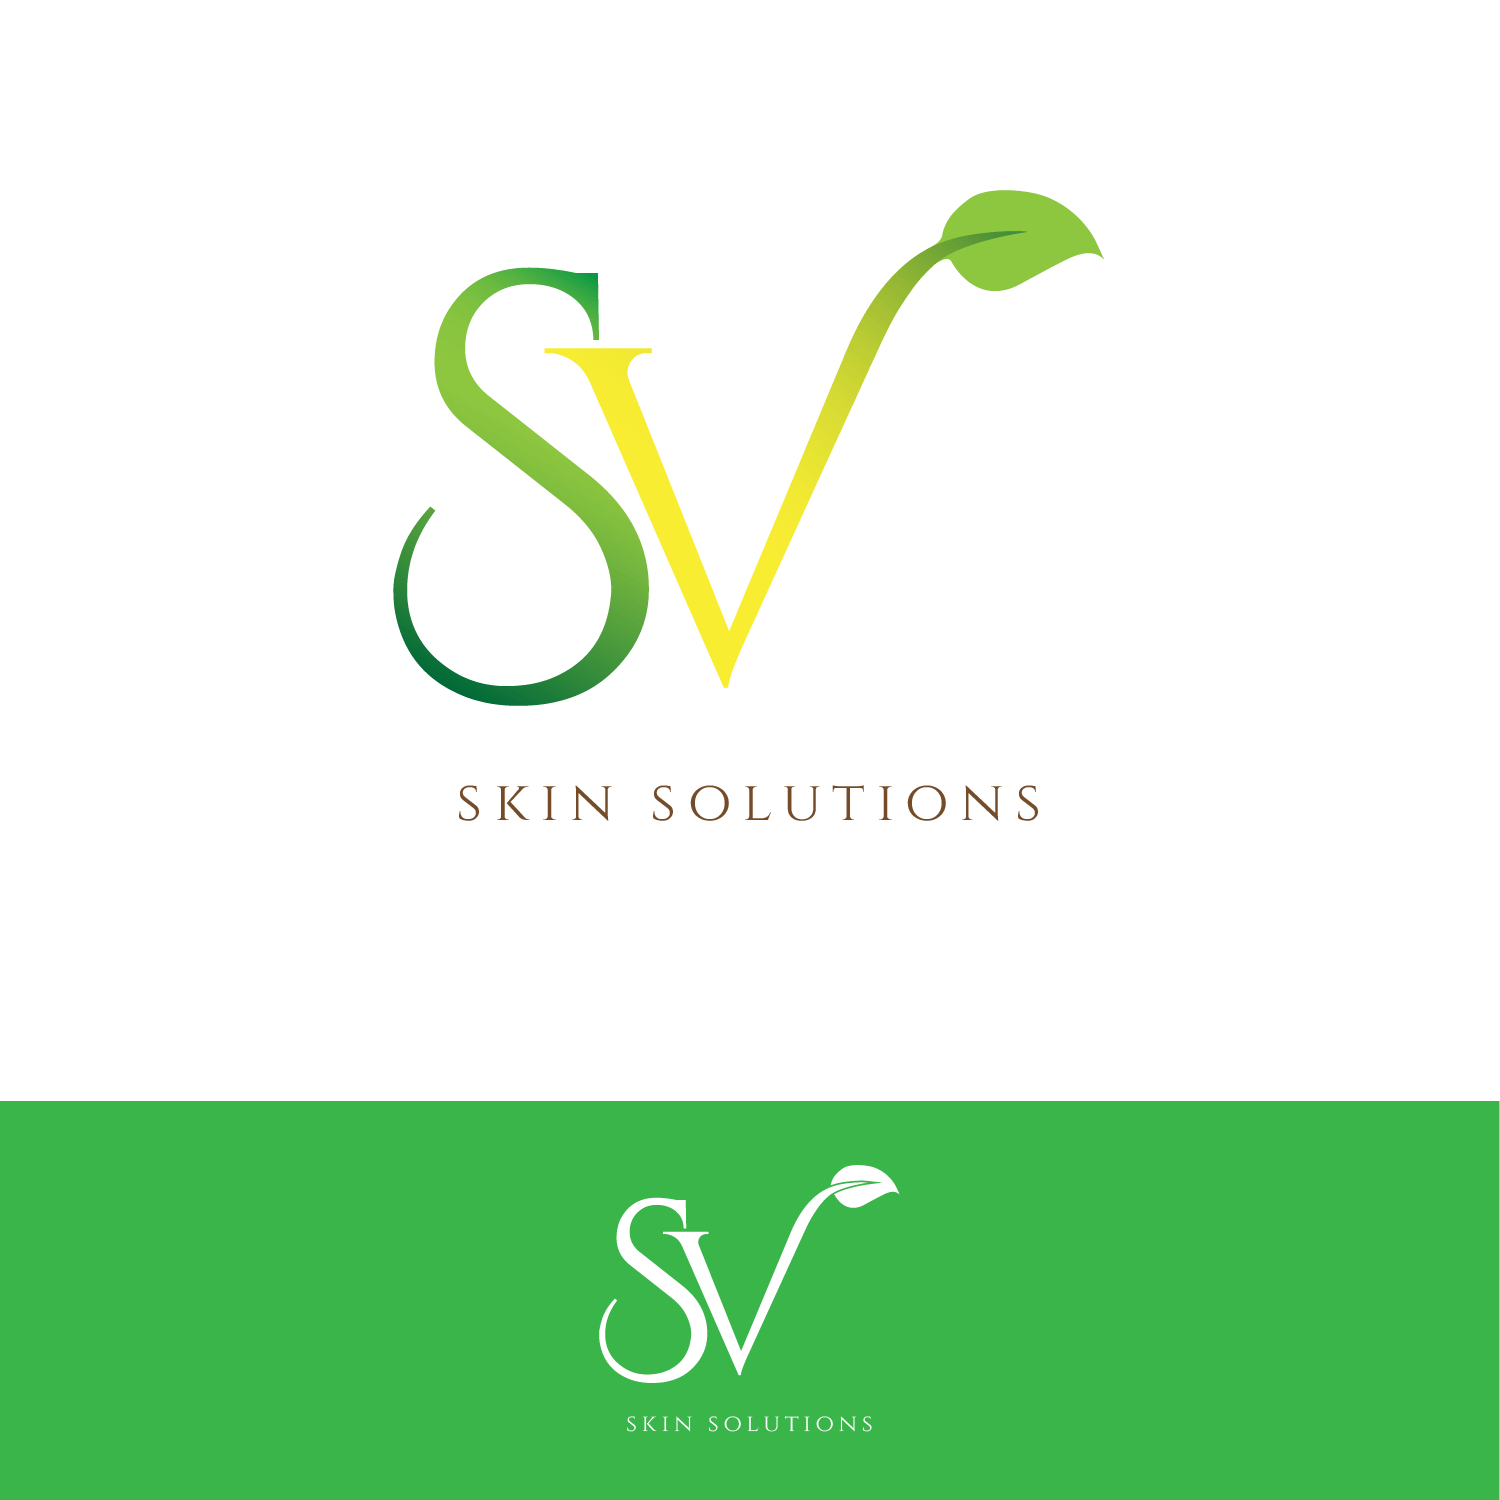 SV Logo - Bold, Playful, Skin Care Product Logo Design for SV skin solutions ...